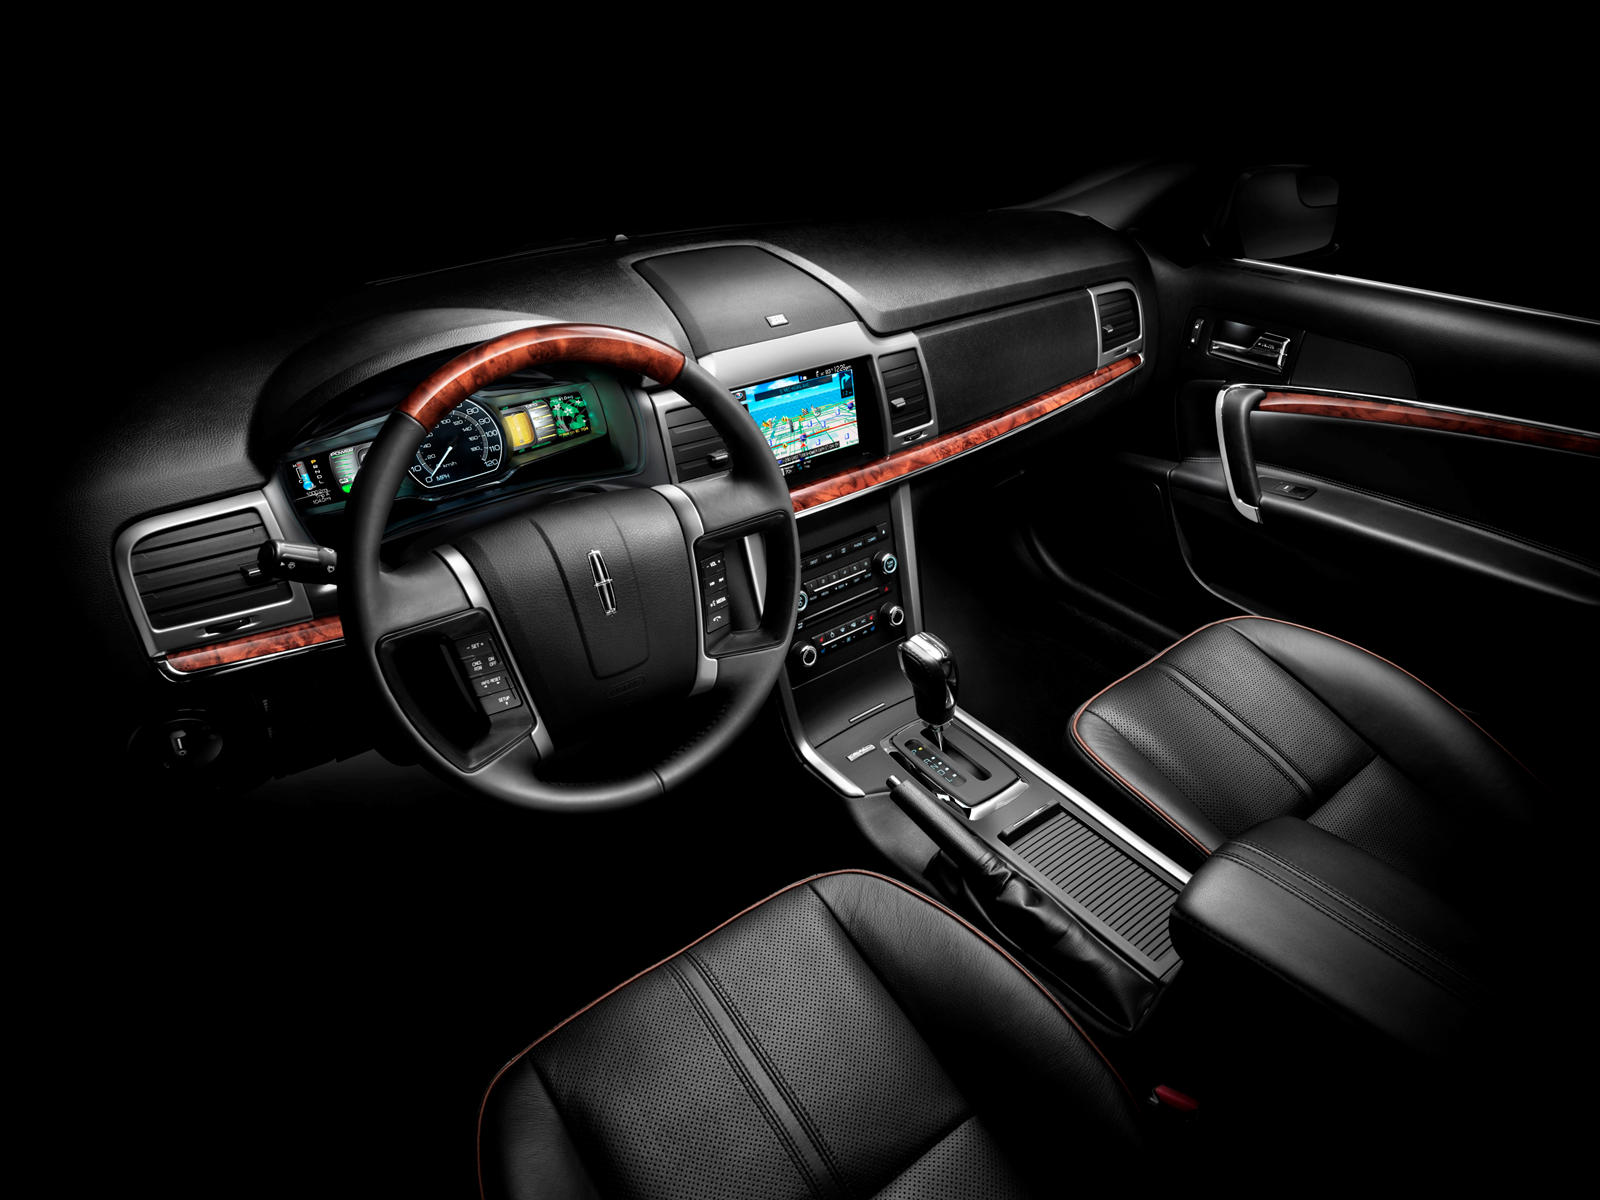 2012 Lincoln MKZ Interior Photos | CarBuzz